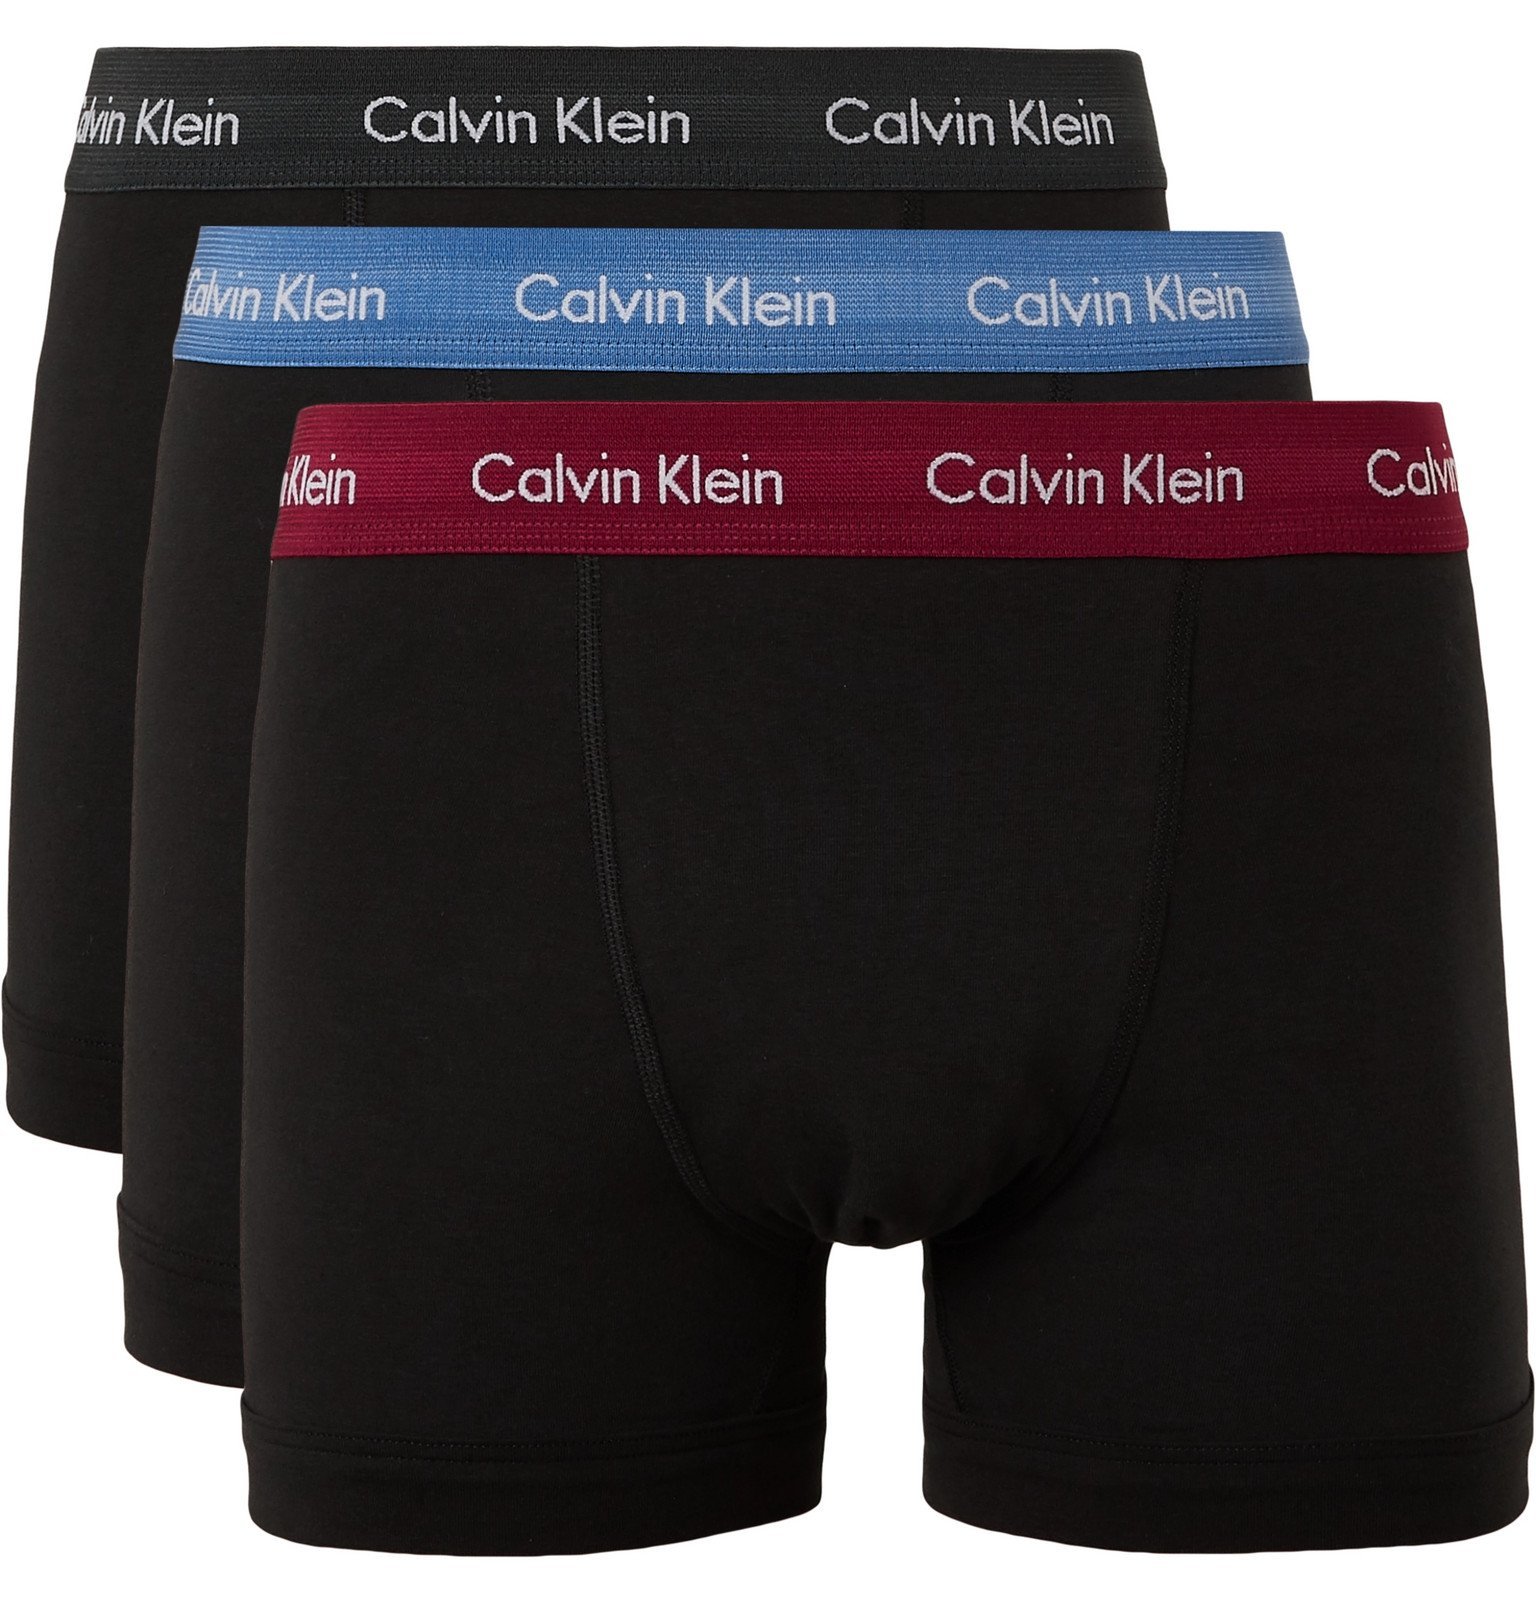 Calvin Klein - Three-Pack Stretch-Cotton Boxer Briefs Black Calvin Klein Underwear